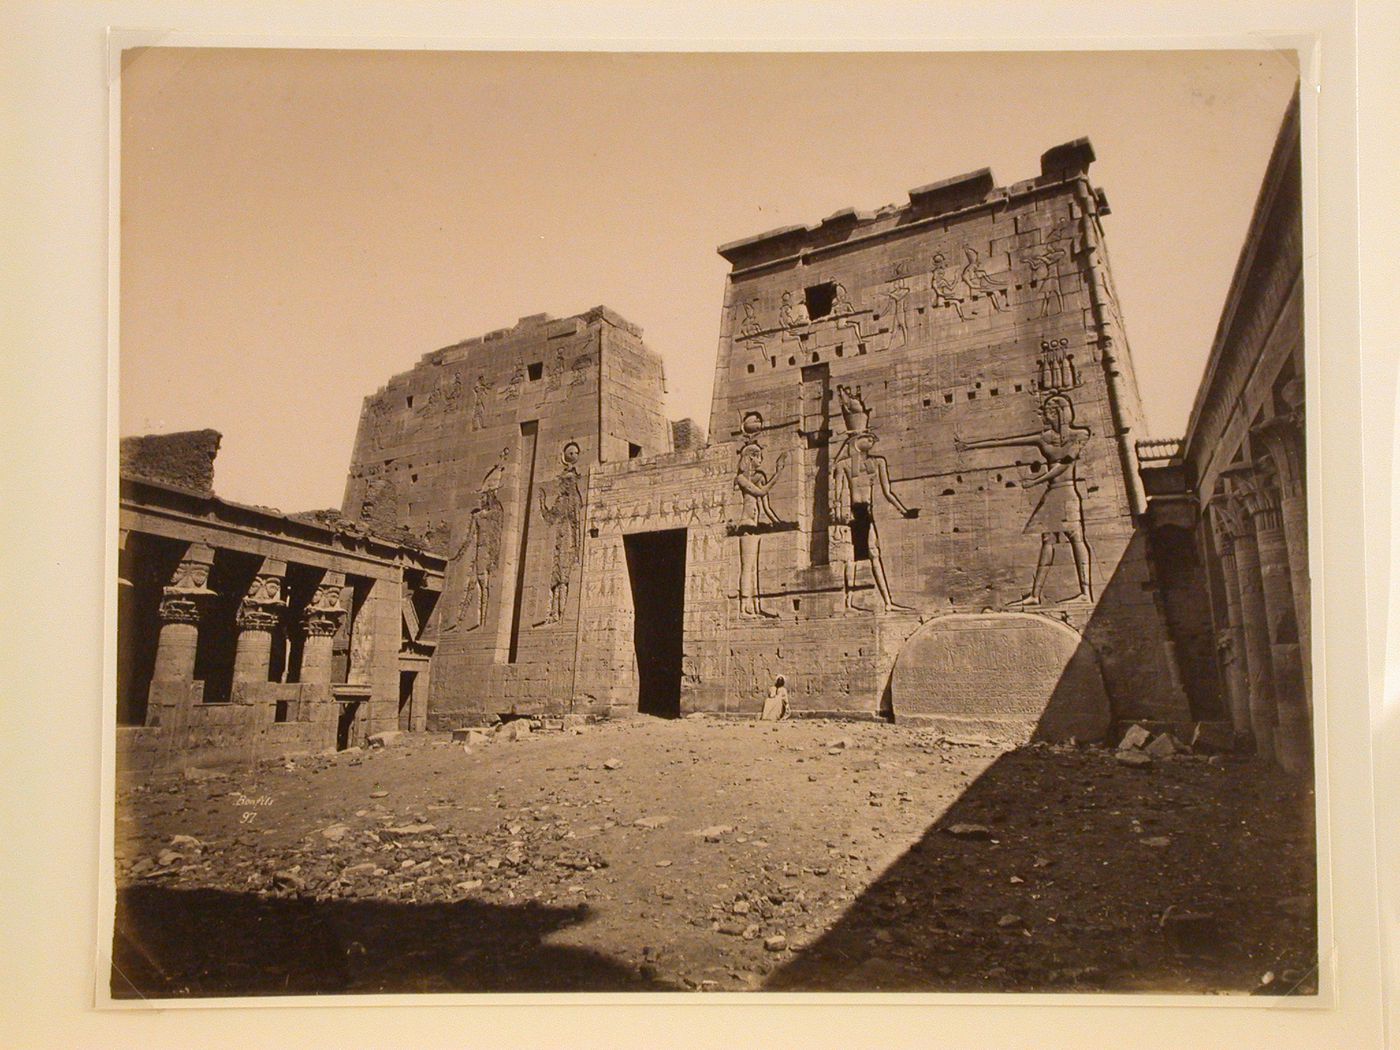 2me Pylone du Temple de Isis, Egypte